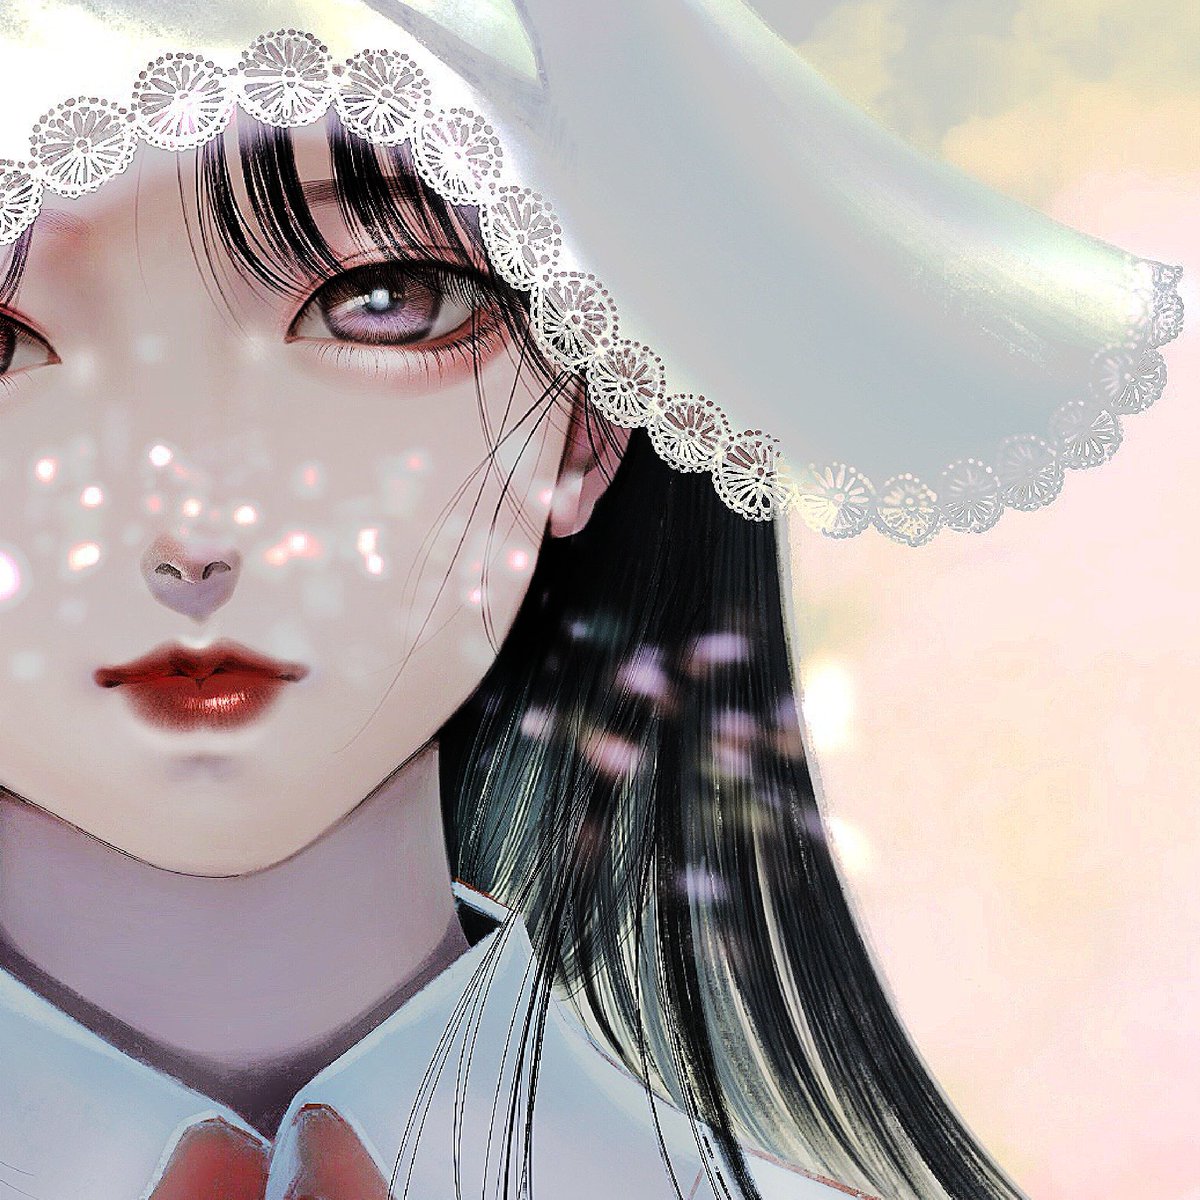 「オギャ〜〜〜〜〜天使かね 」|細川成美のイラスト